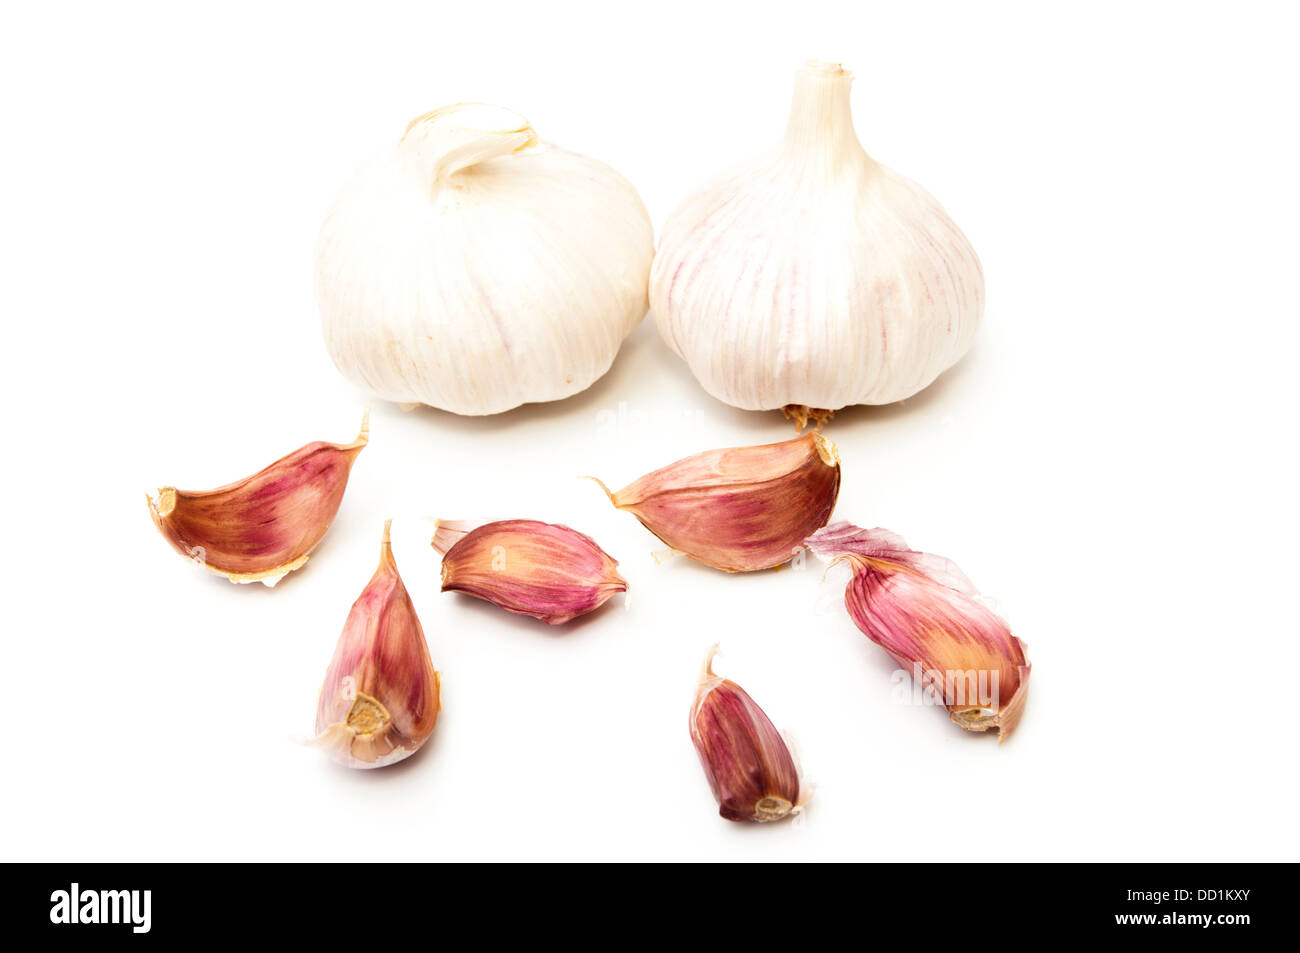 Aglio e chiodi di garofano di aglio su sfondo bianco Foto Stock